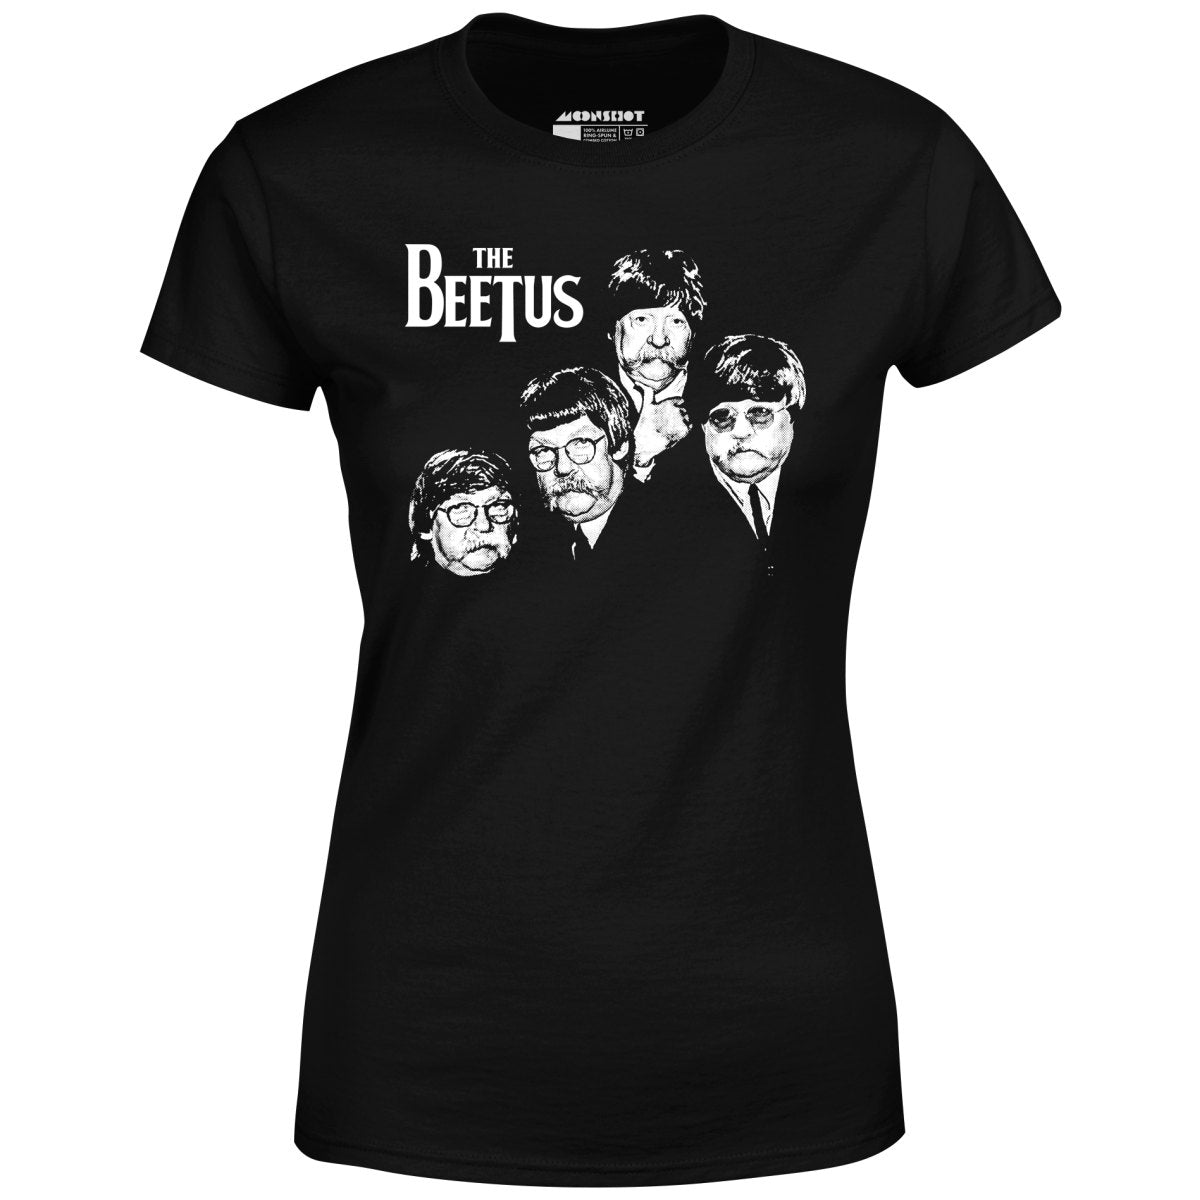 The Beetus - Women's T-Shirt